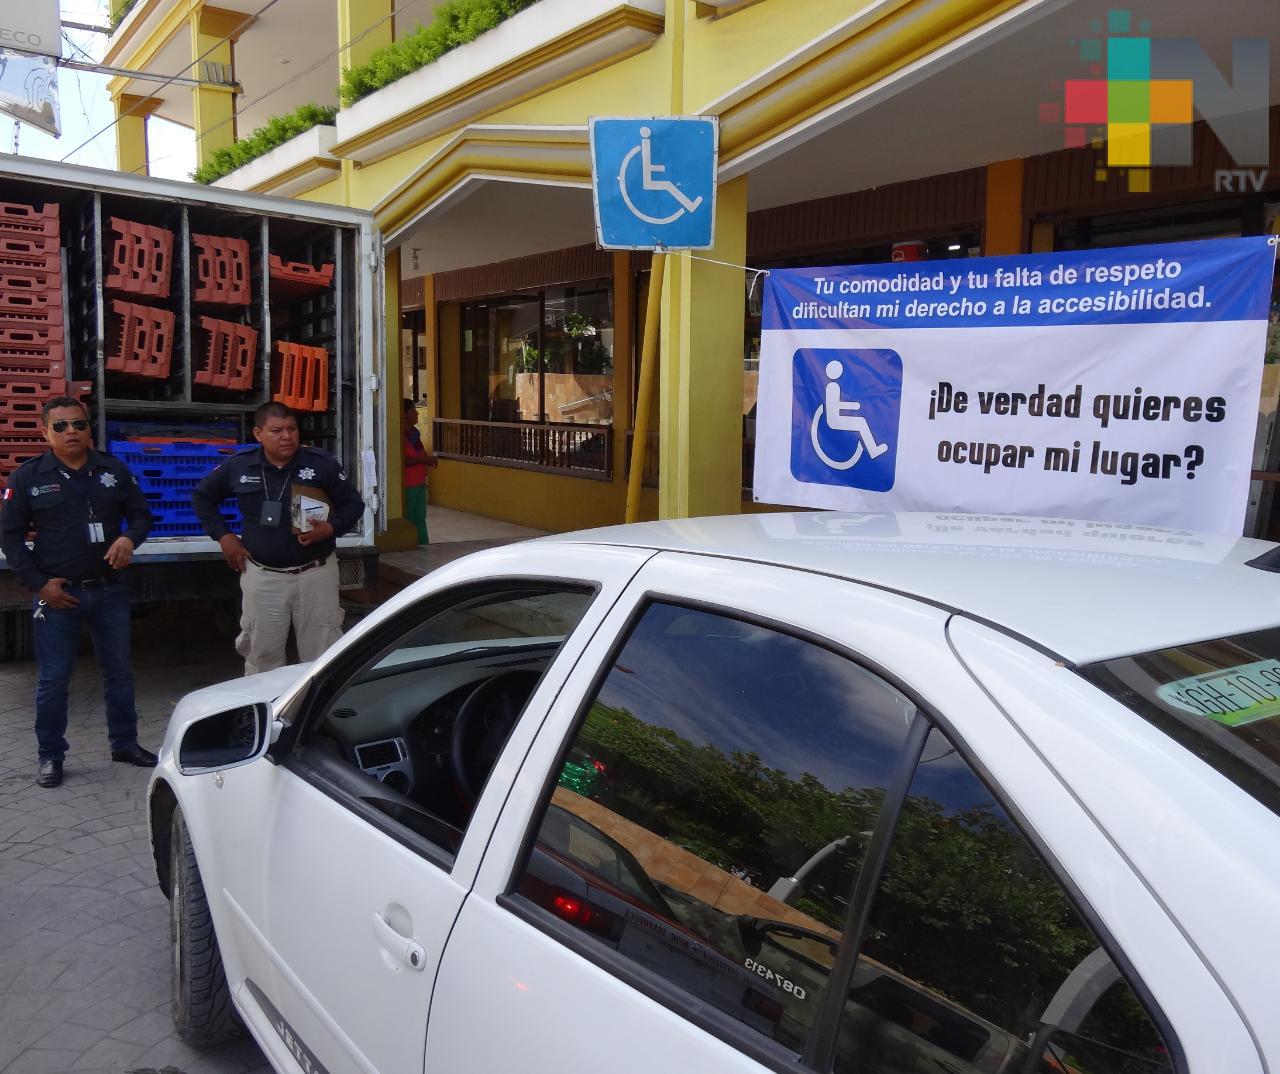 Tránsito coloca lonas para que automovilistas respeten espacios para discapacitados